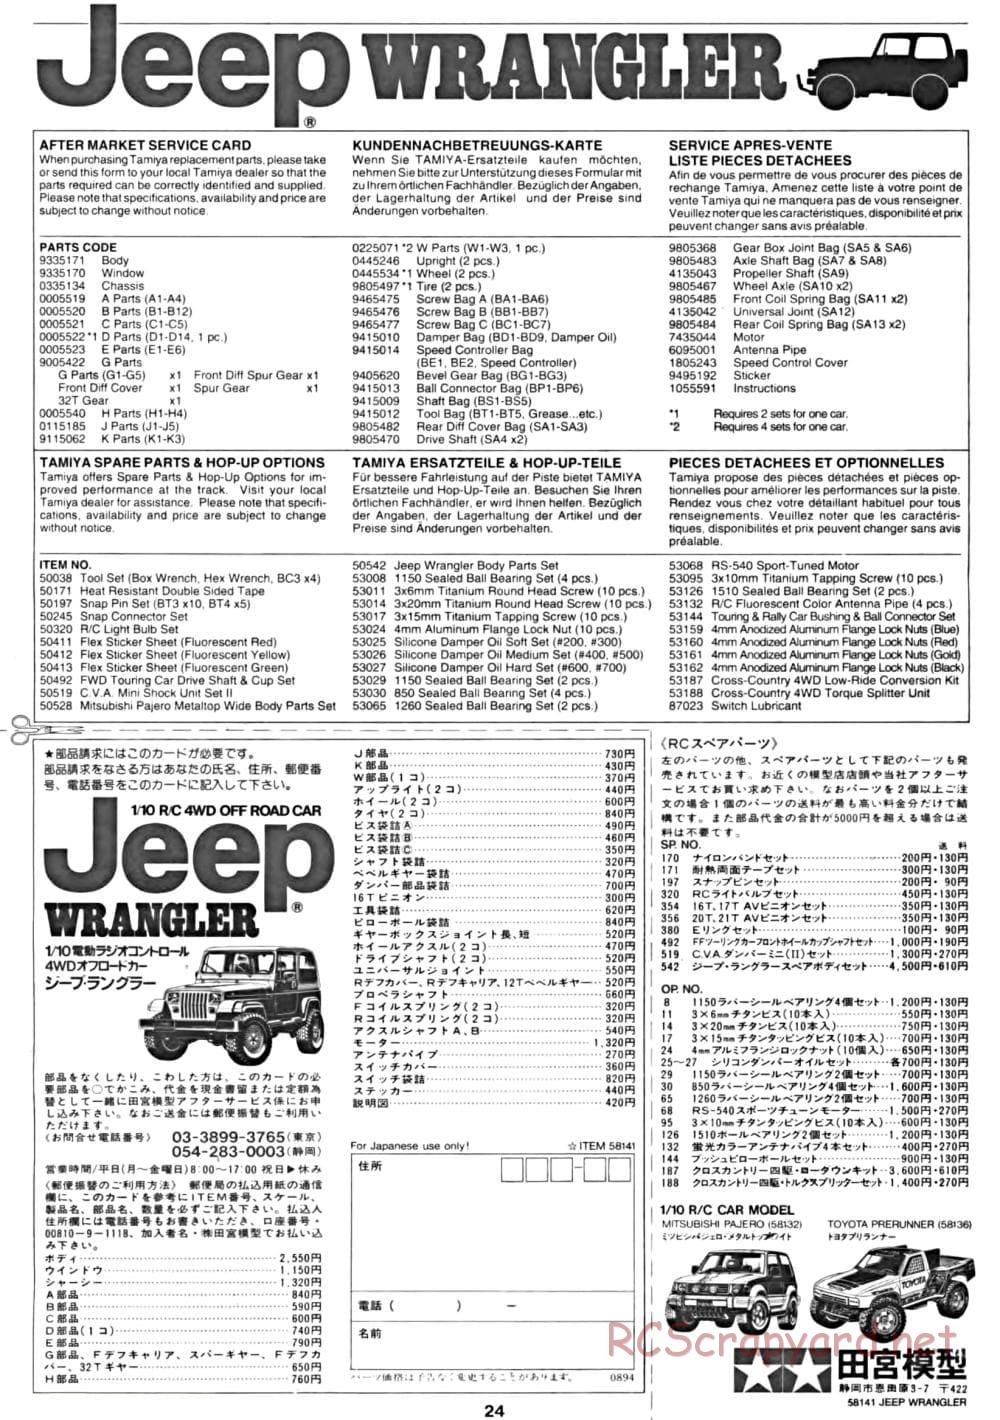 Tamiya - Jeep Wrangler - CC-01 Chassis - Manual - Page 24